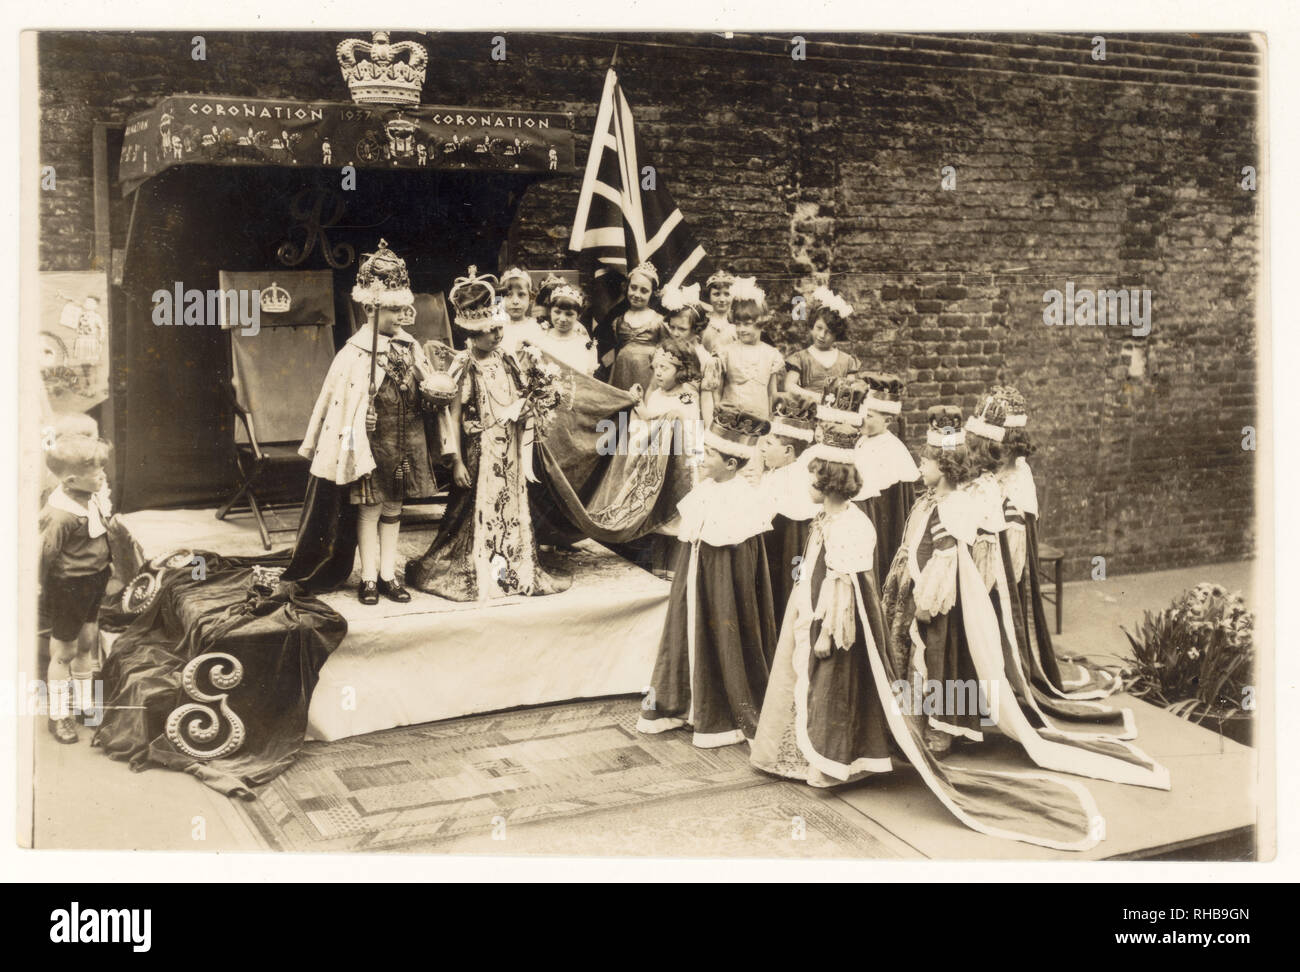 Carte postale originale de l'ère des années 1930 du couronnement du roi George VI et de la reine Elizabeth, des écoliers reprenant leur costume, date de 1937 au-dessus de l'étape, Royaume-Uni. Banque D'Images